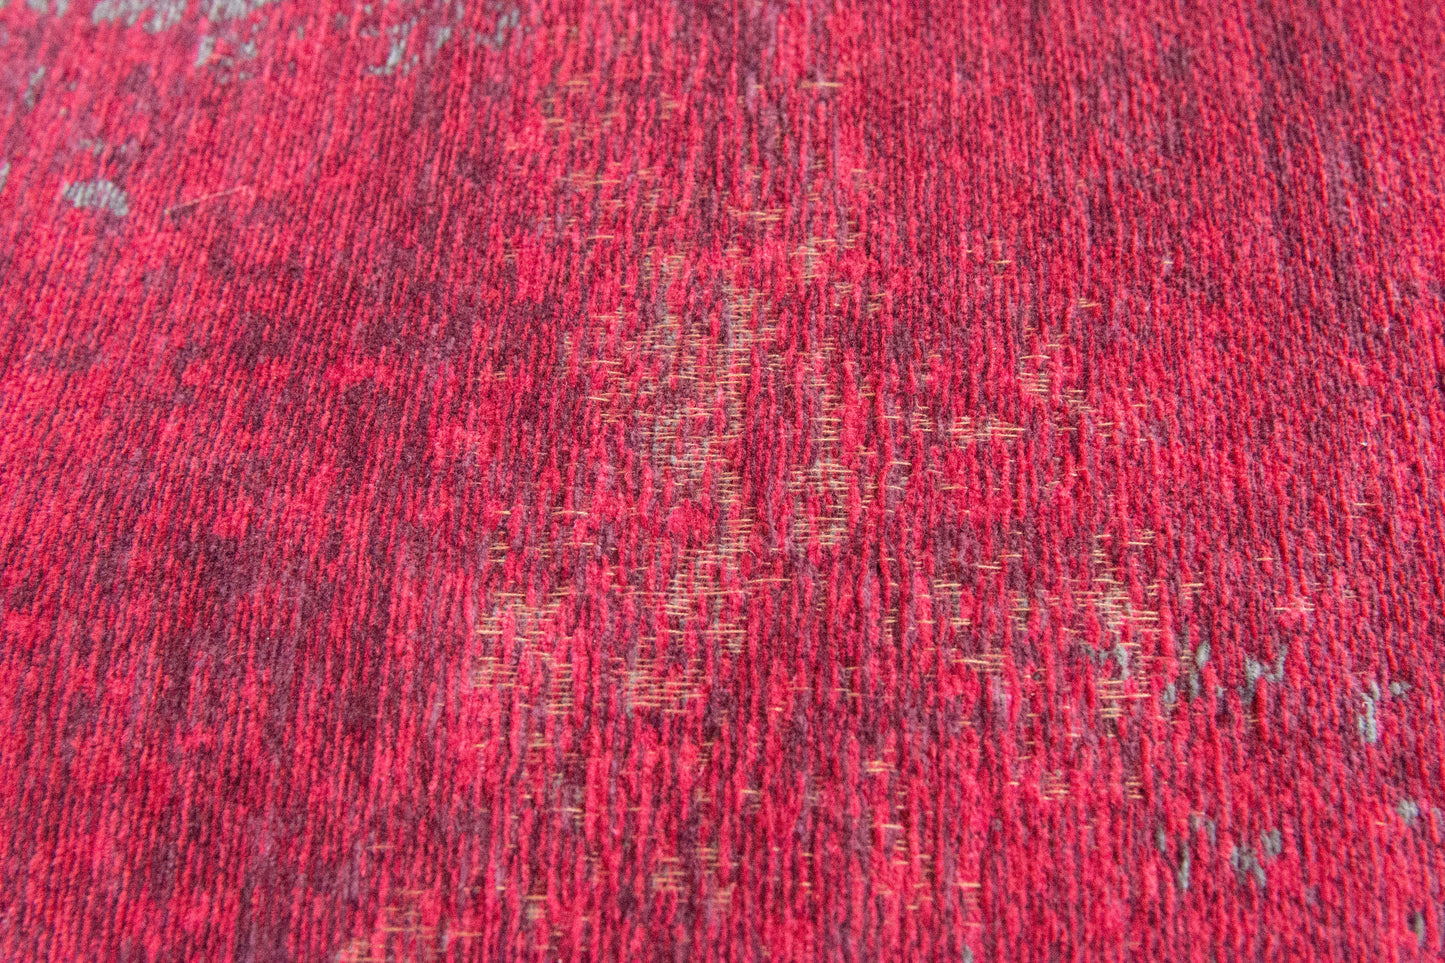 ME-701: Jacquard carpet